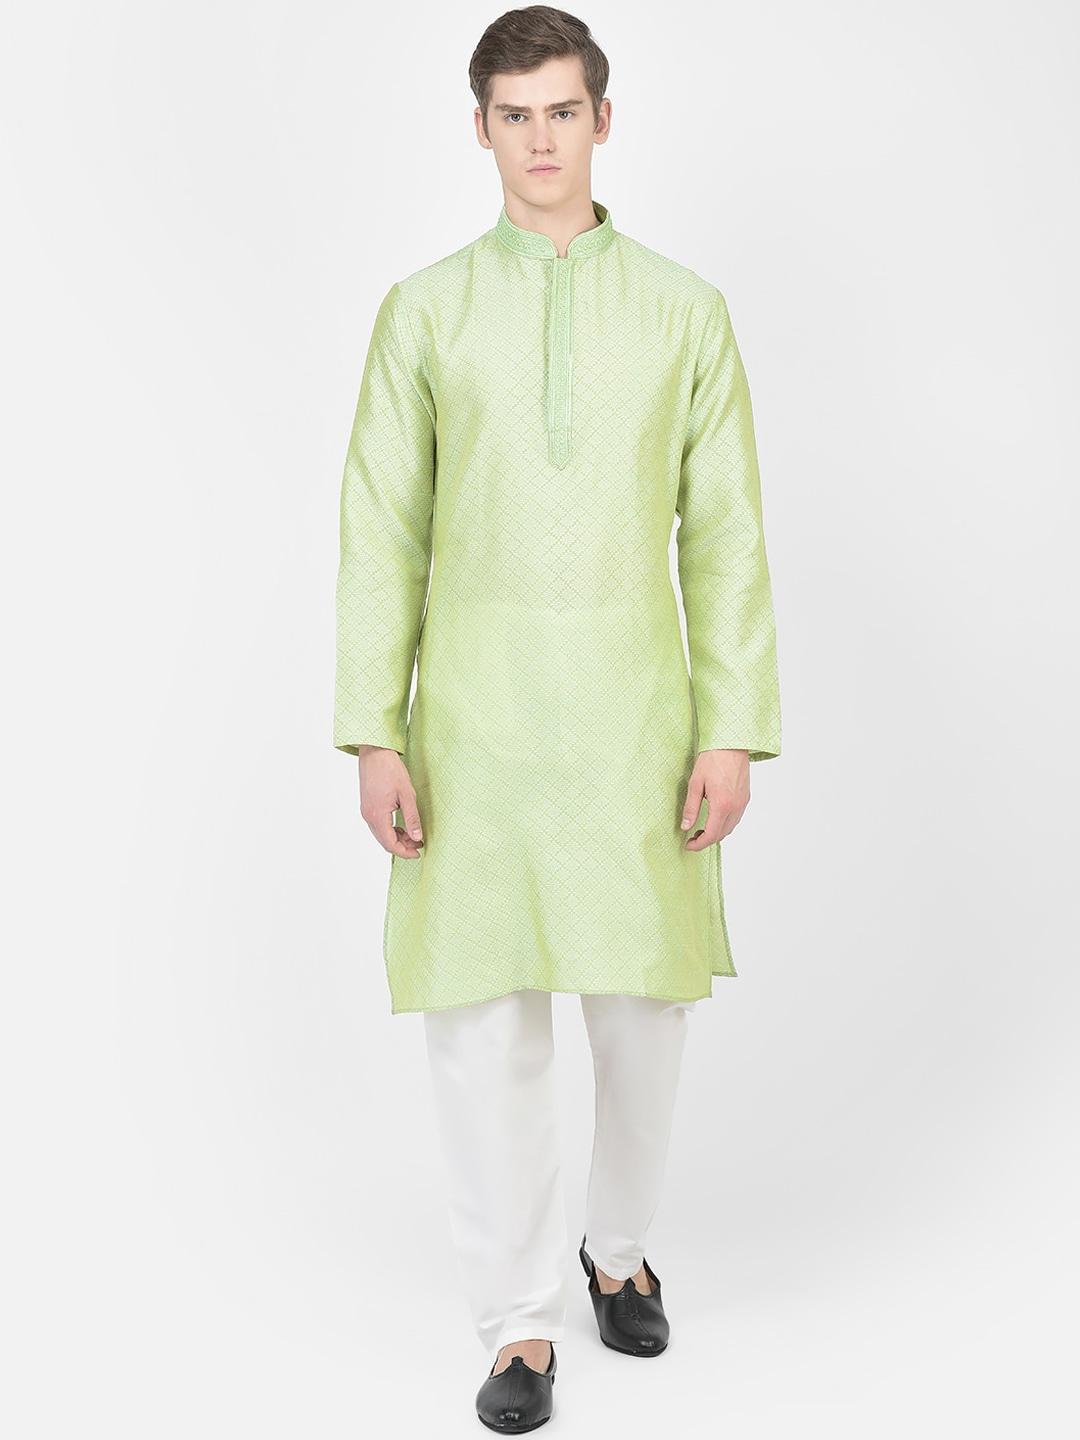 SG LEMAN Woven Design Mandarin Collar Kurta with Pyjamas